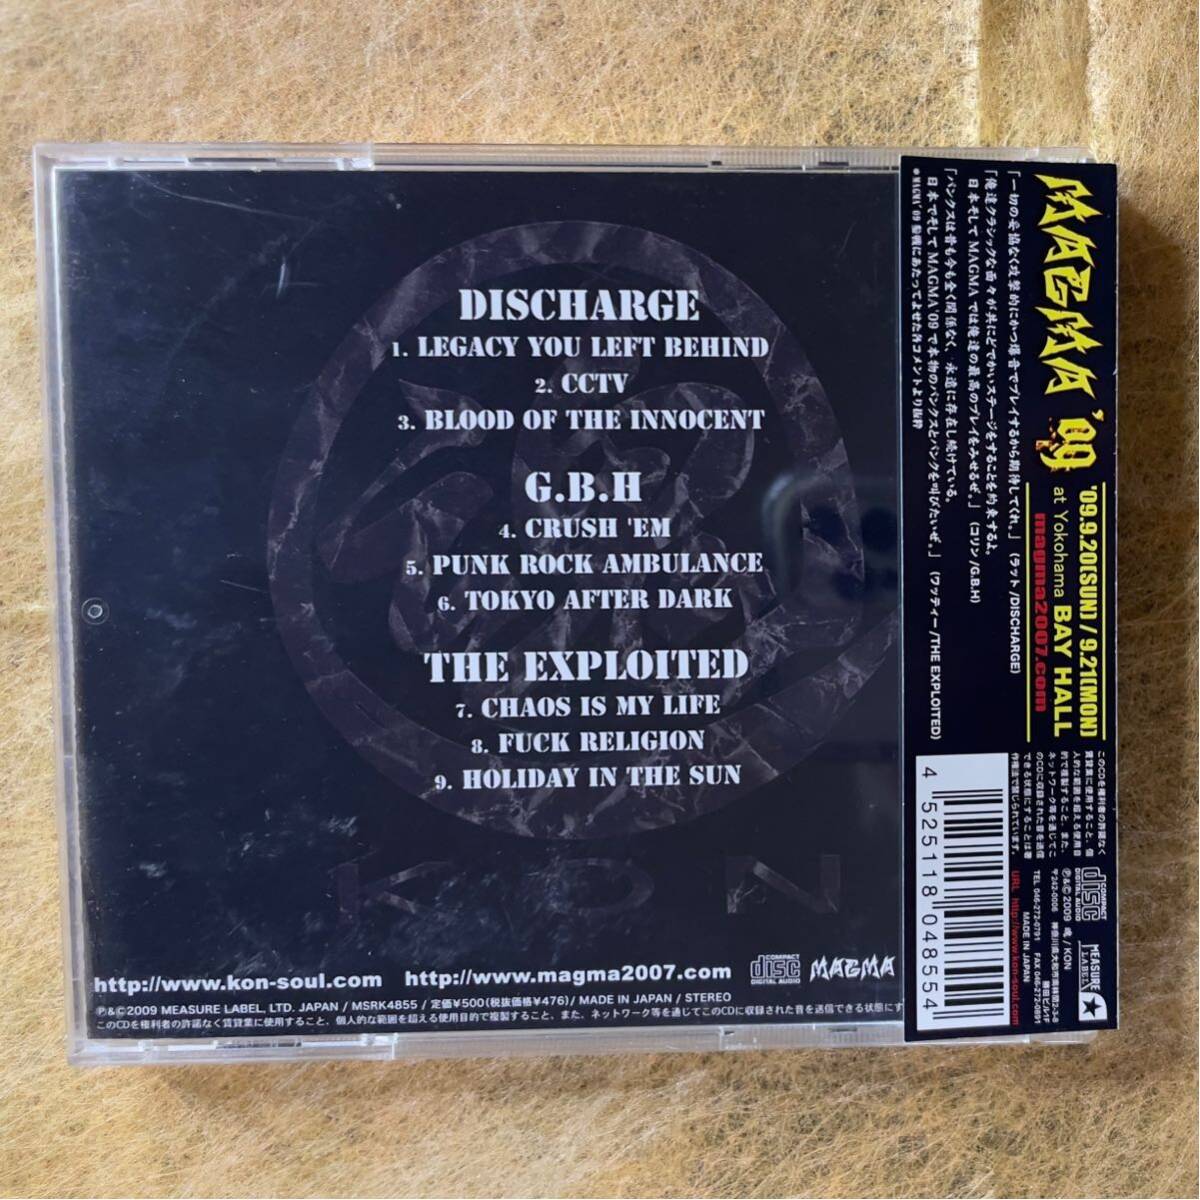 国内盤CD!! MAGMA’09 exploited,エクスプロイテッド, discharge,ディスチャージ,G.B.H,_画像2